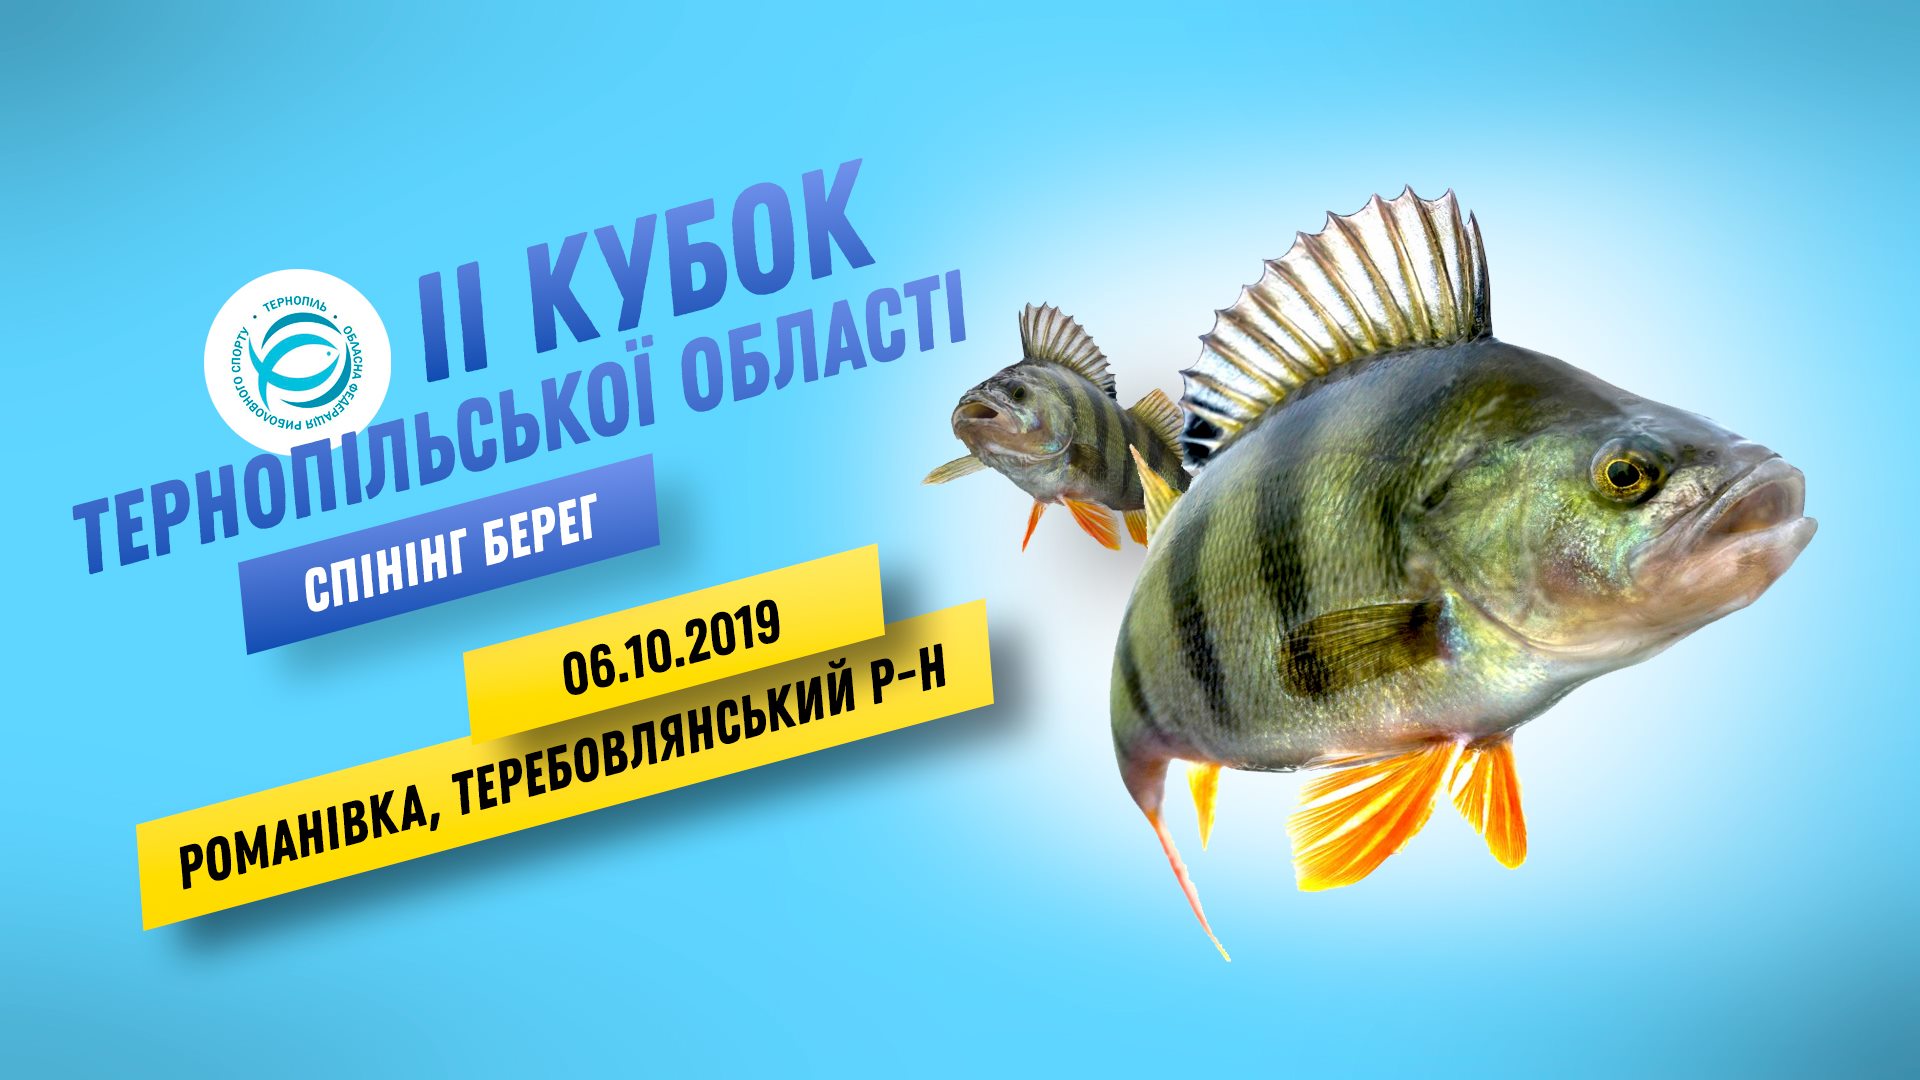 ІІ Кубок Тернопільської області | Спінінг берег